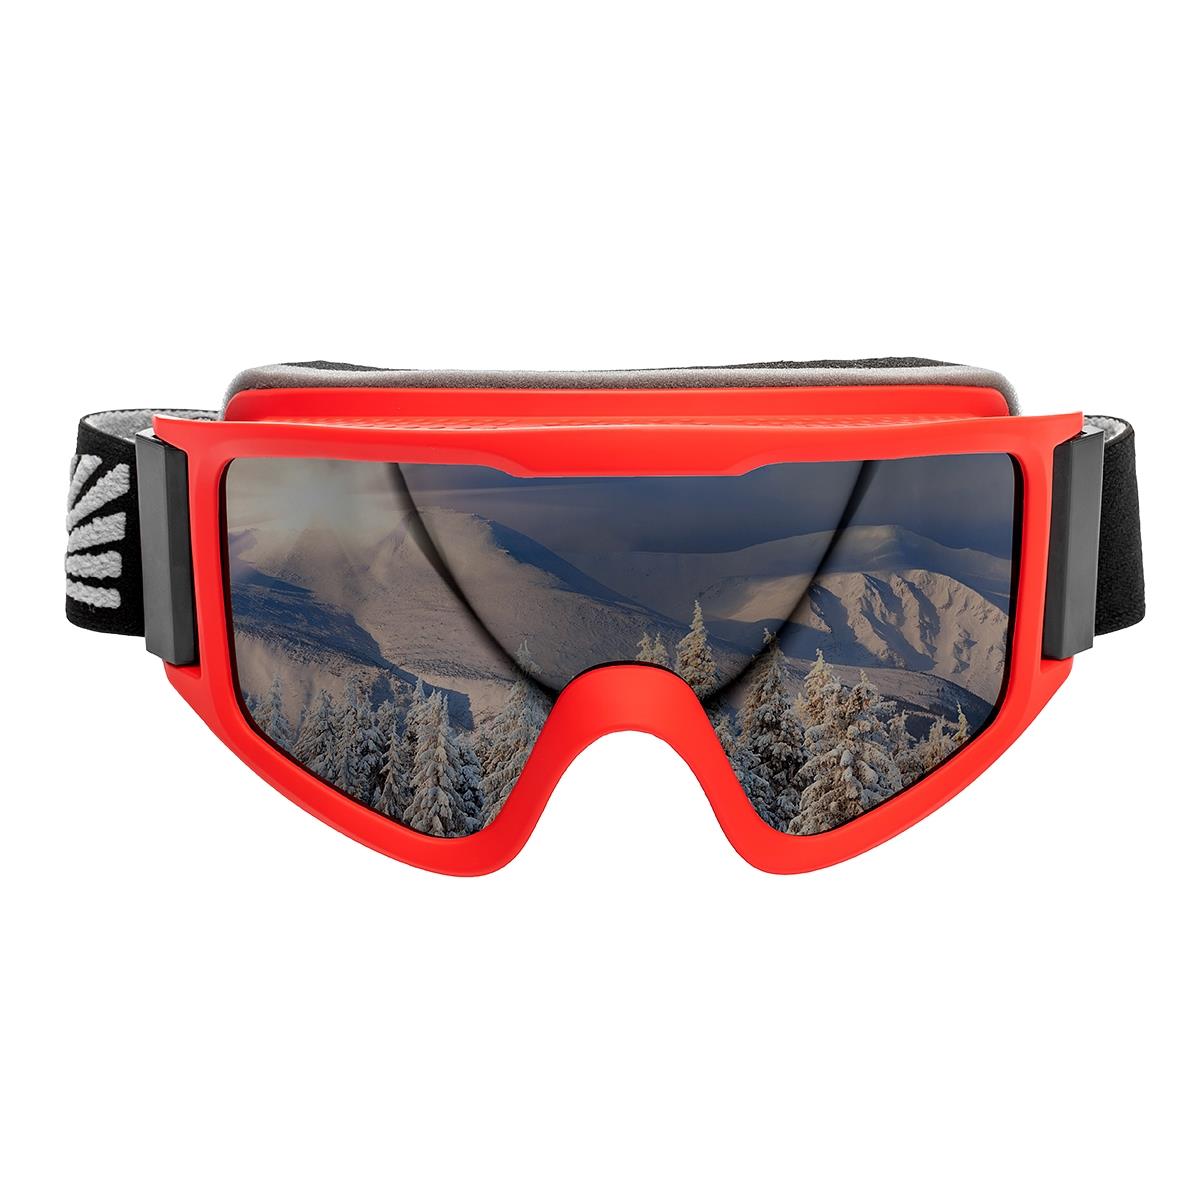 Очки горнолыжные HS-HX-042 Helios очки для плавания взрослые uv защита